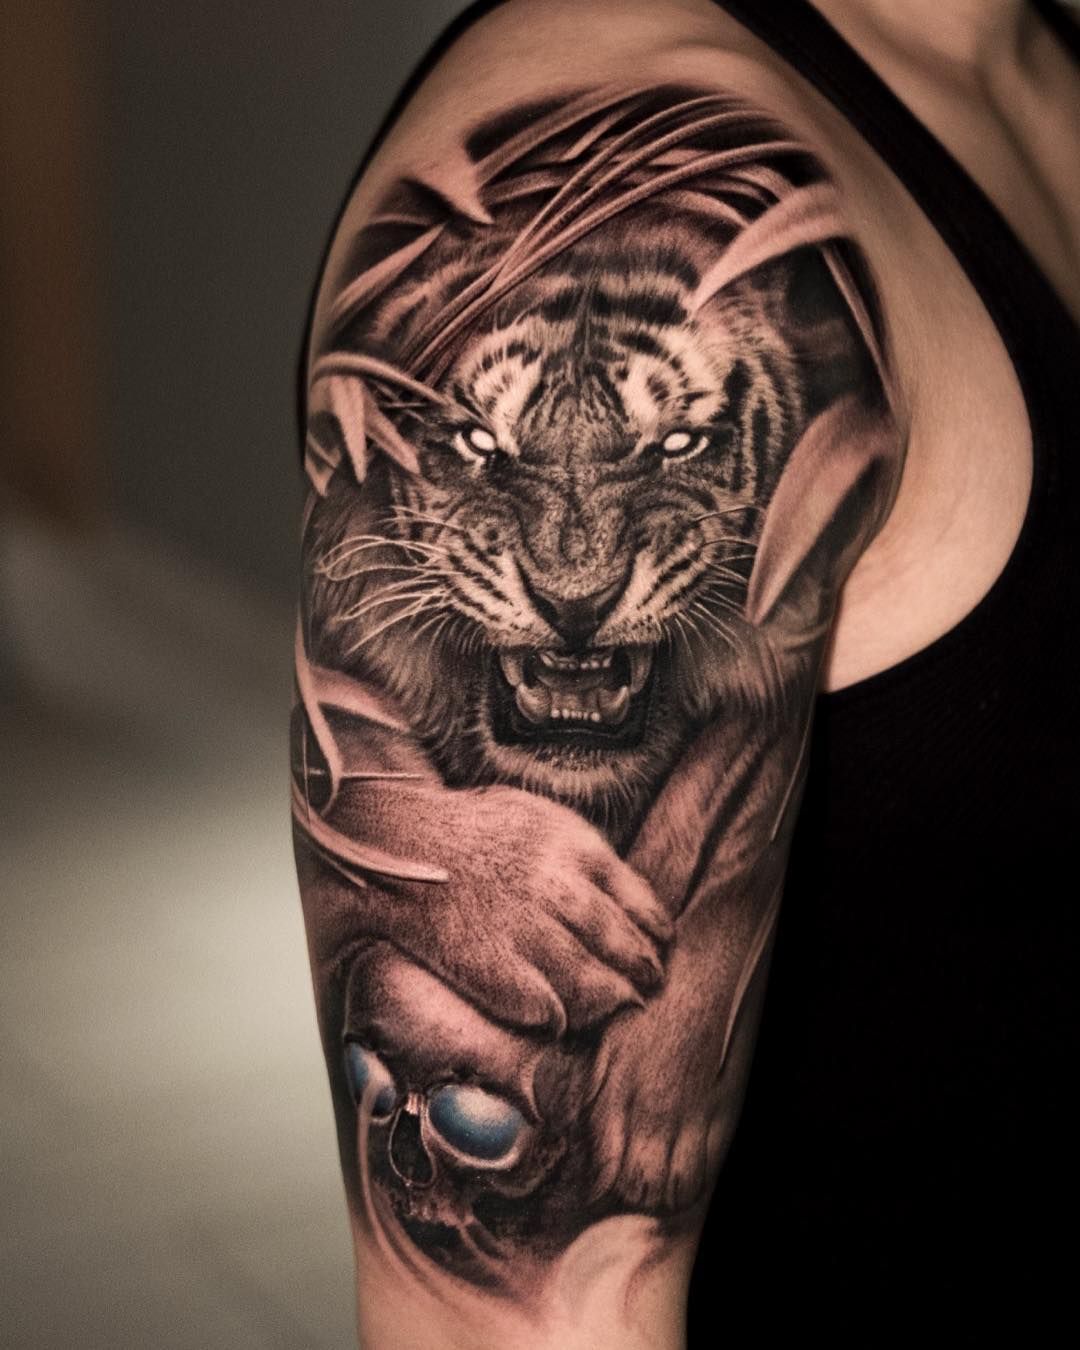 Tiger tattoo by Oscar Akermo  Post 14835  Tiger tattoo design Picture  tattoos Tiger tattoo